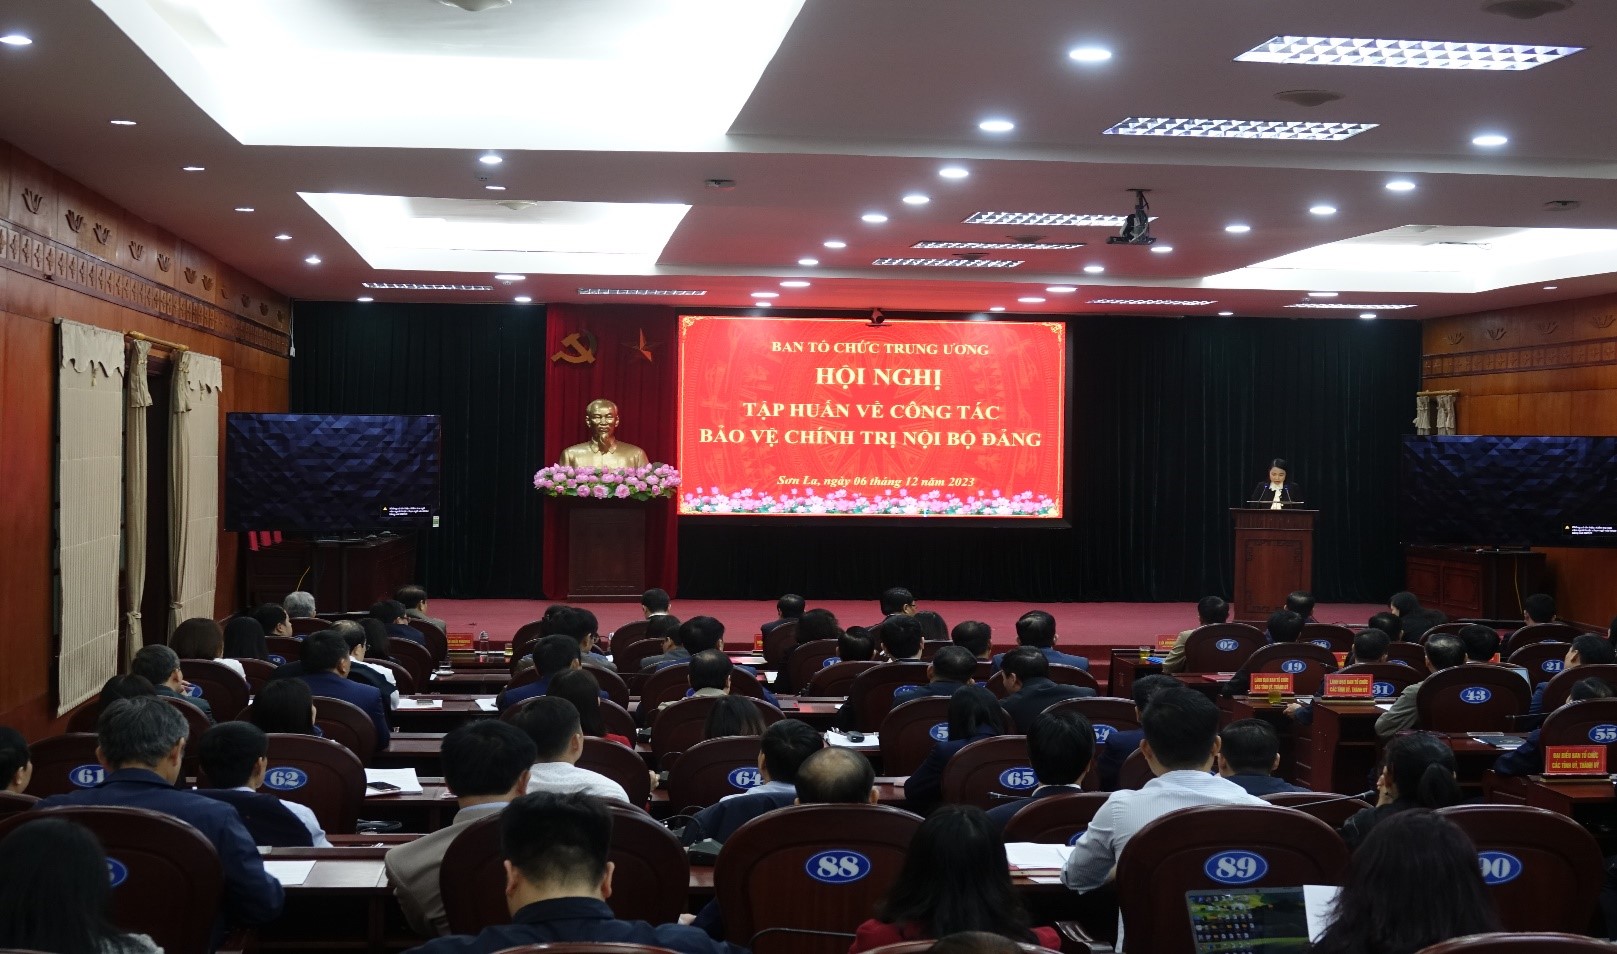 Ban Tổ chức Tỉnh ủy dự Hội nghị tập huấn công tác Bảo vệ chính trị nội bộ tại tỉnh Sơn La